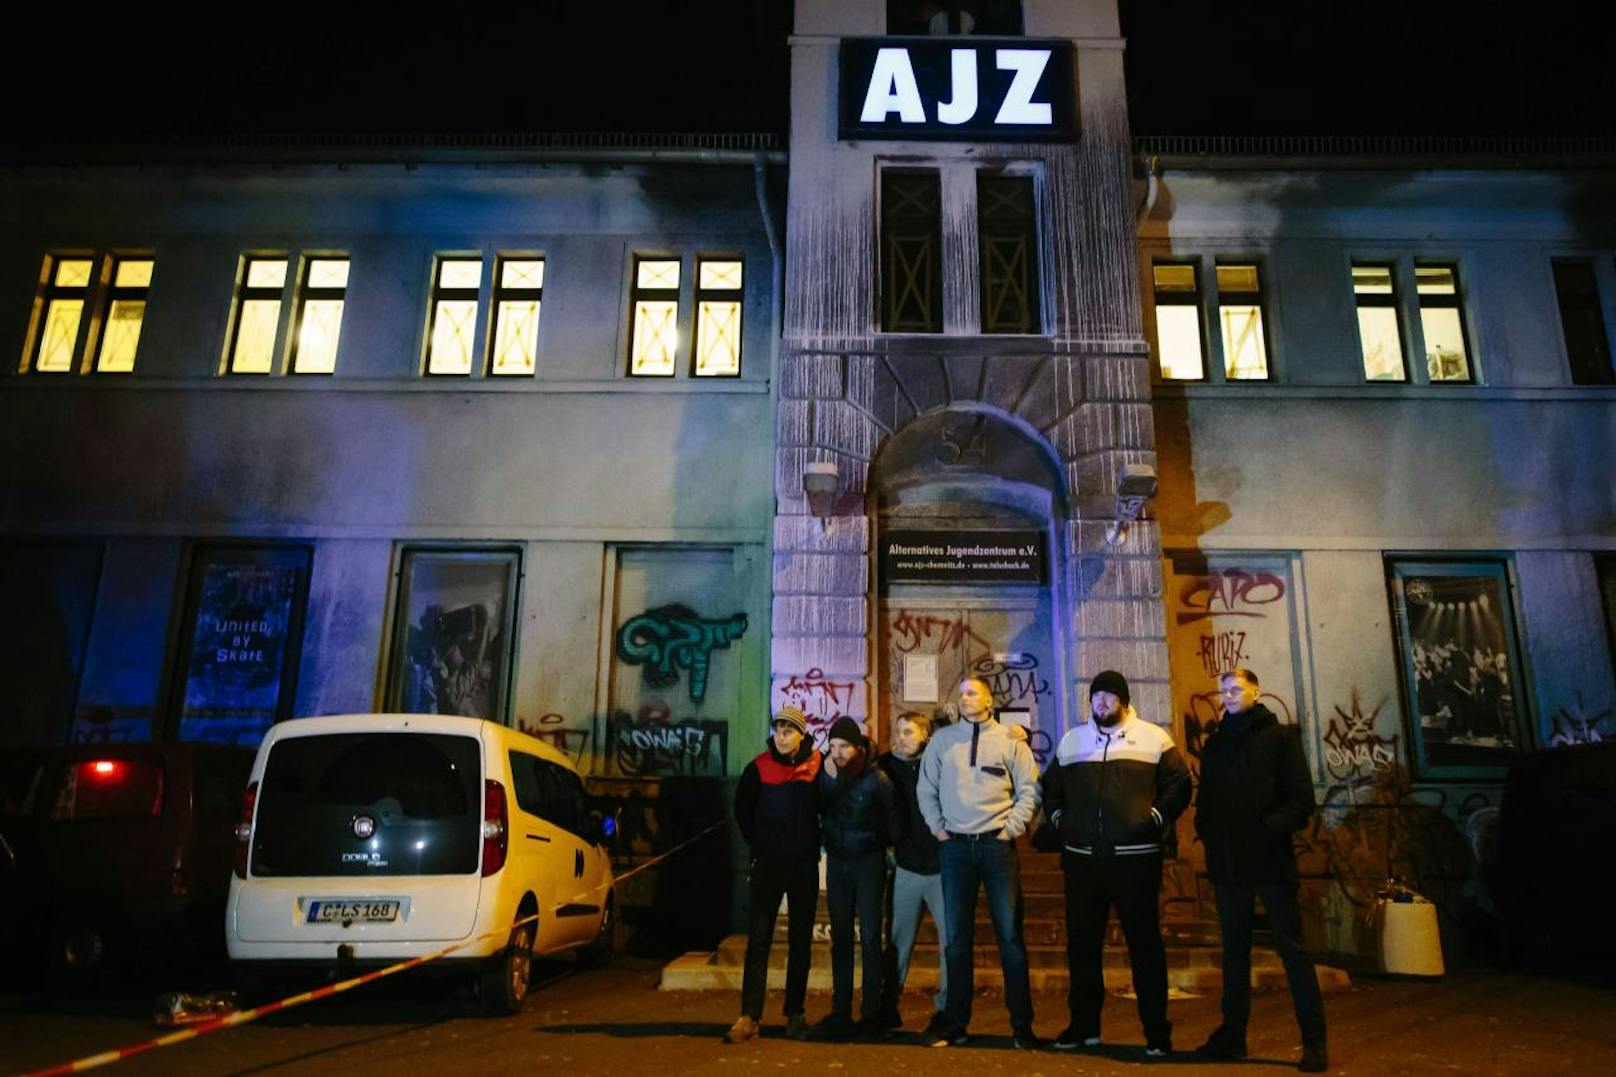 Feine Sahne Fischfilet Konzert im AJZ Chemnitz wegen Bombendrohung verspätet gestartet 